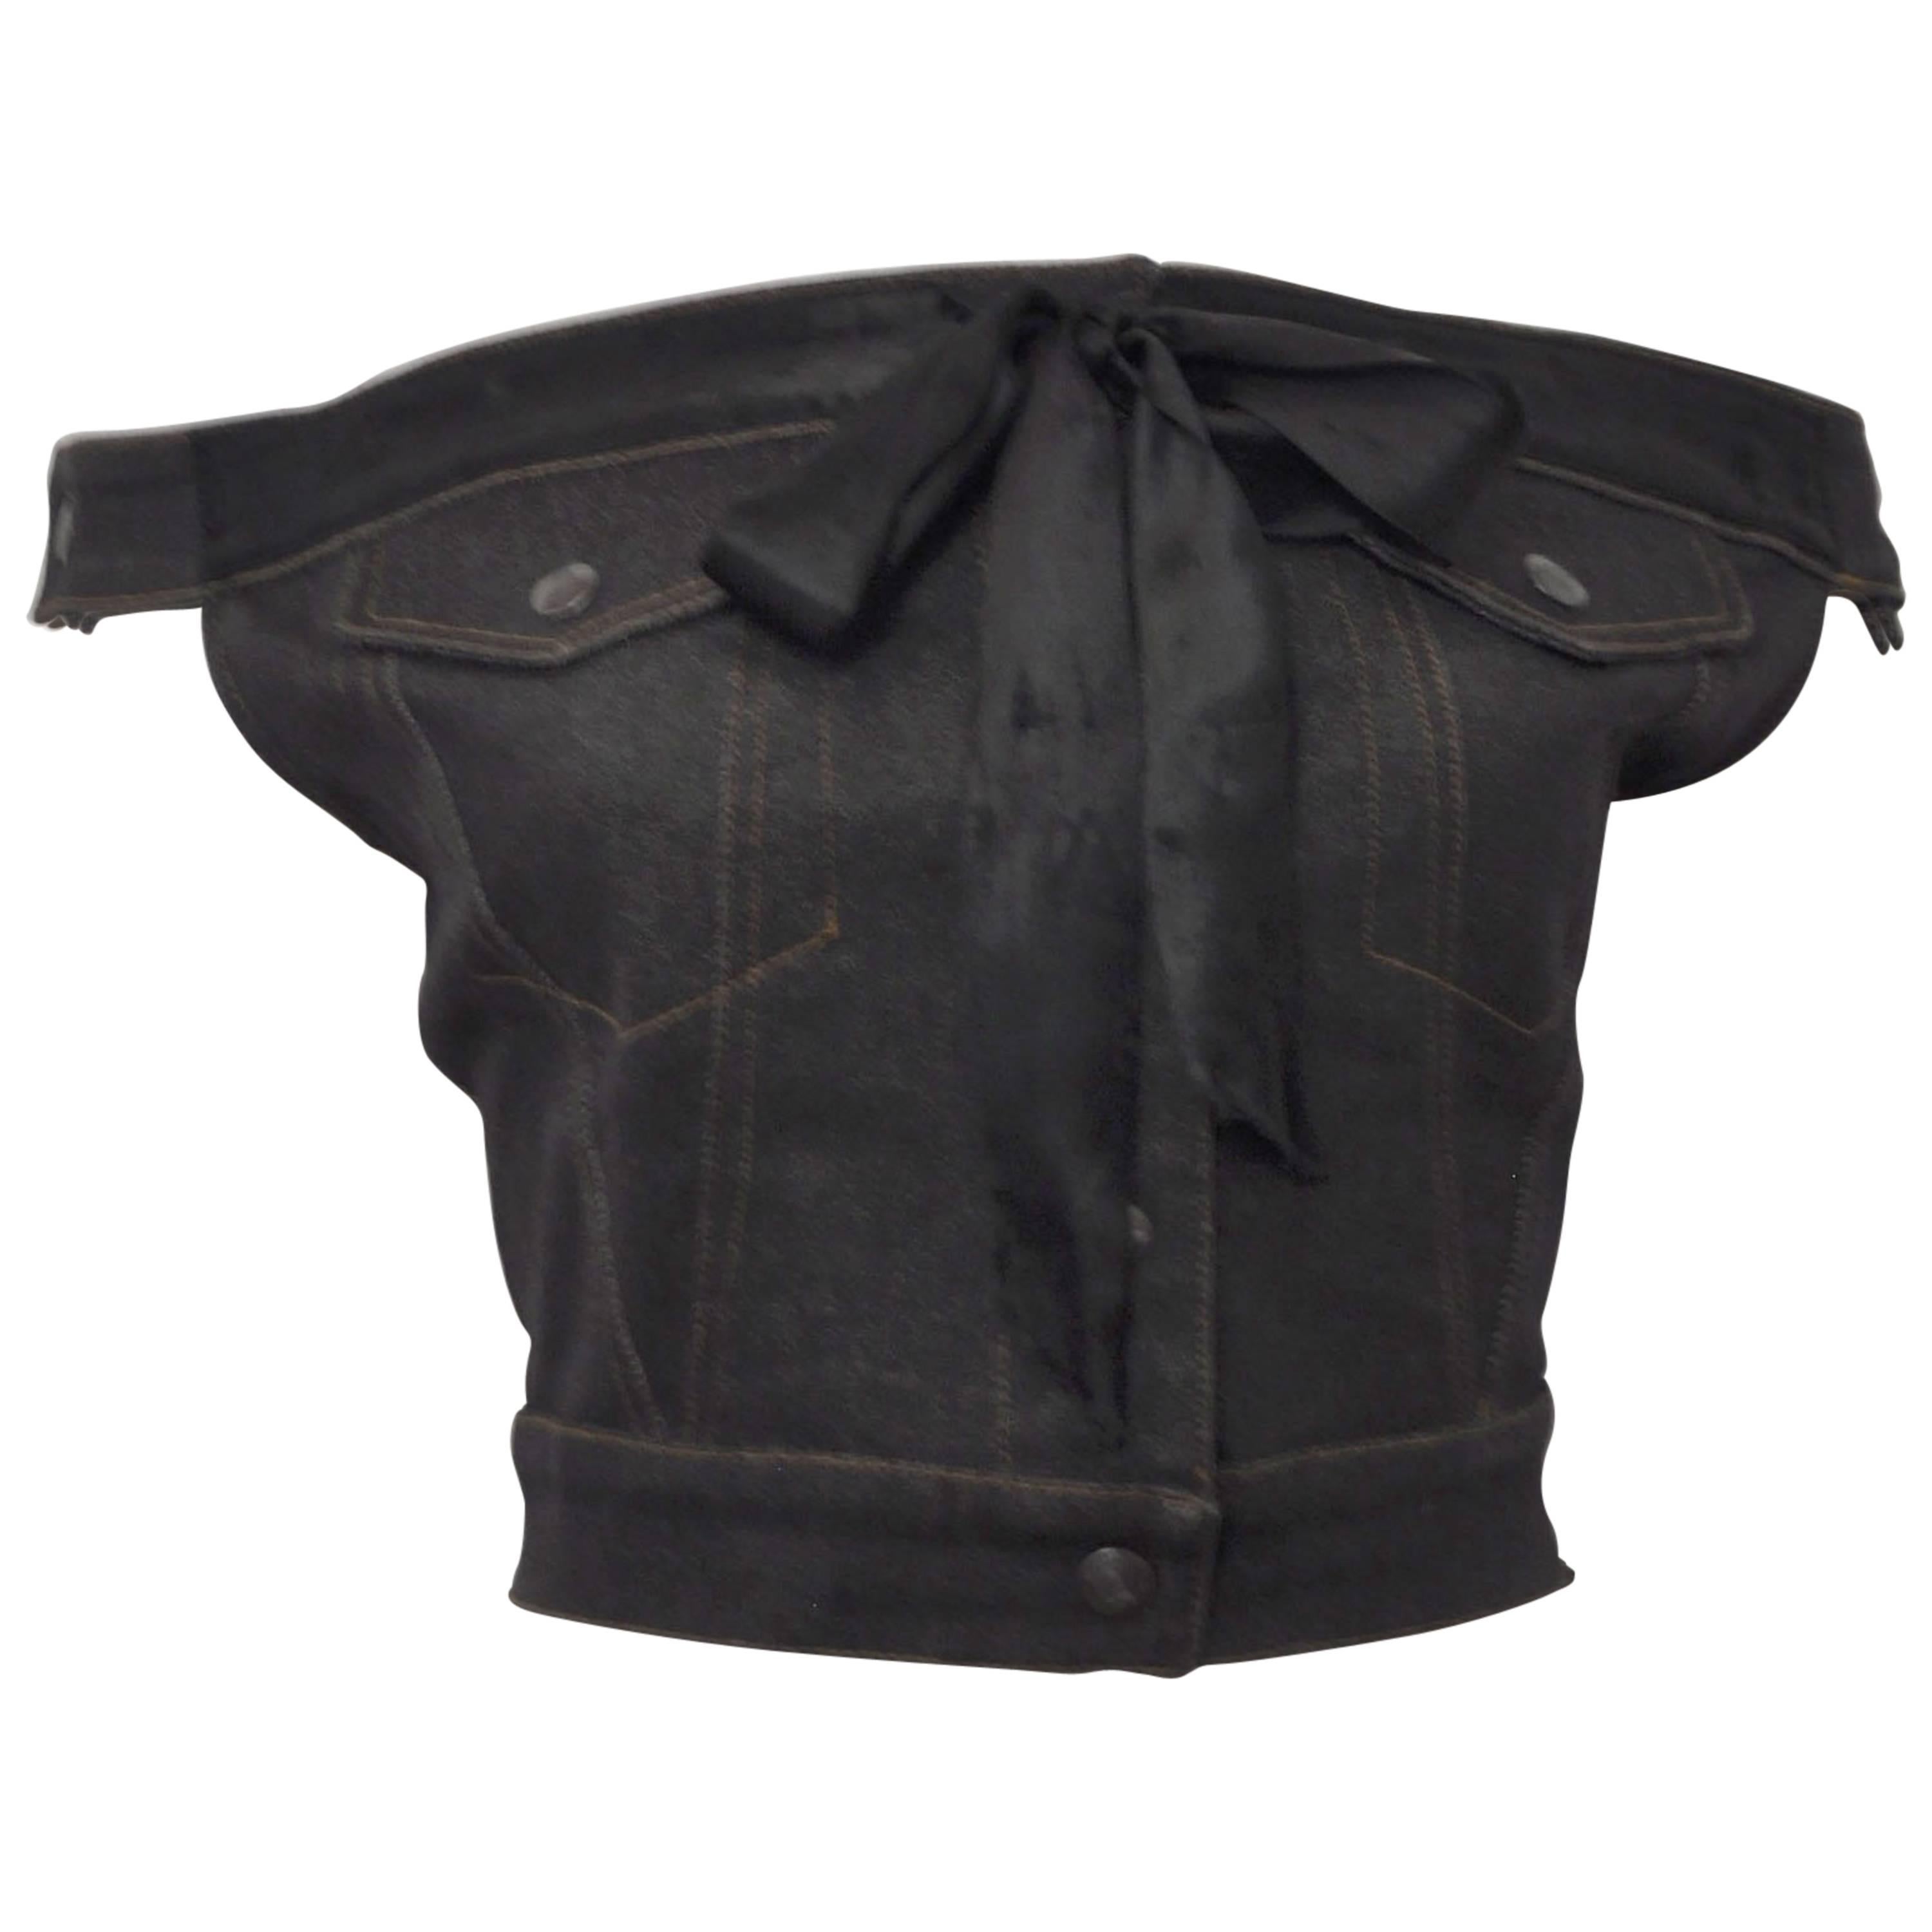 1987 Jean-Paul Gaultier Junior  deconstructed ‘Victorian Jean Jacket’ corset top